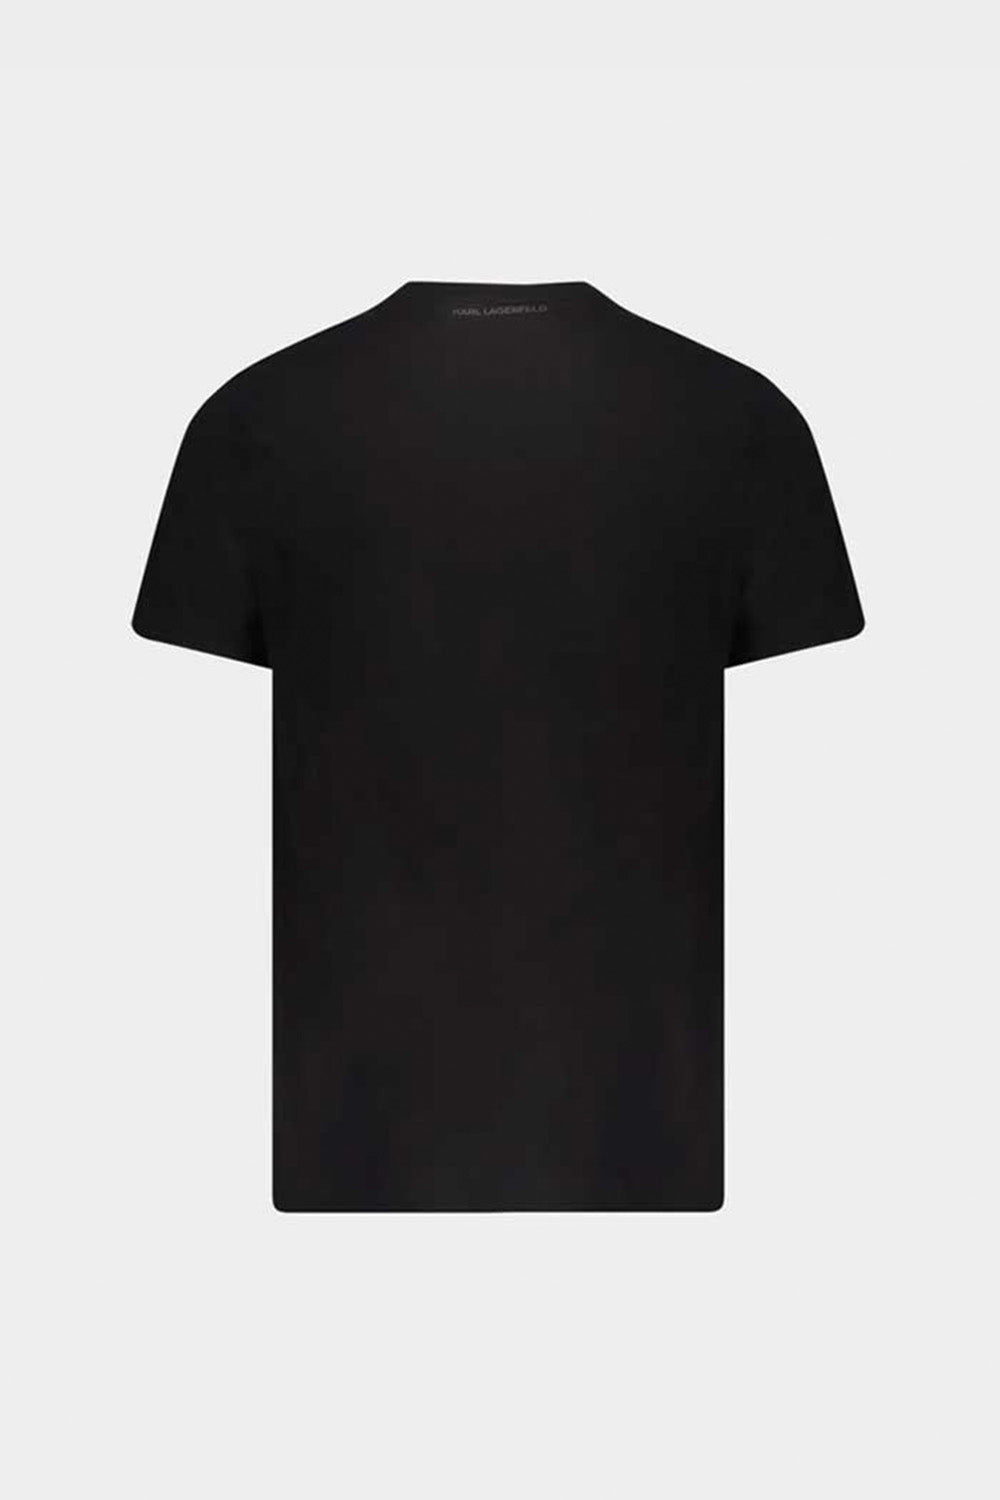 חולצת טי שירט לגברים הדפס פרופיל KARL LAGERFELD KARL LAGERFELD Vendome online | ונדום .